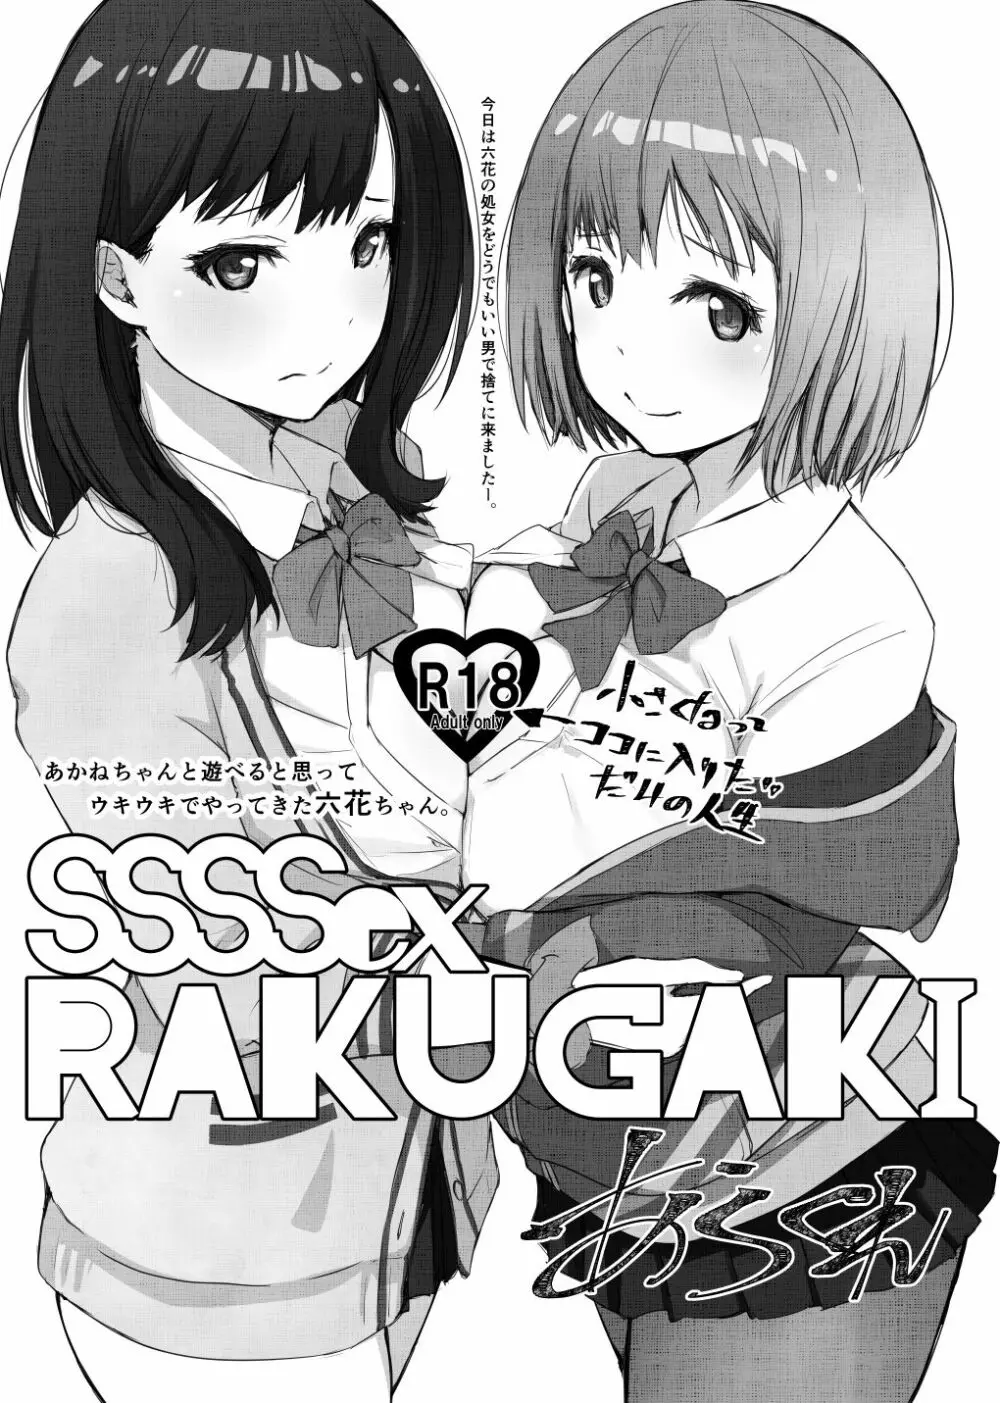 SSSSex Rakugaki - page1